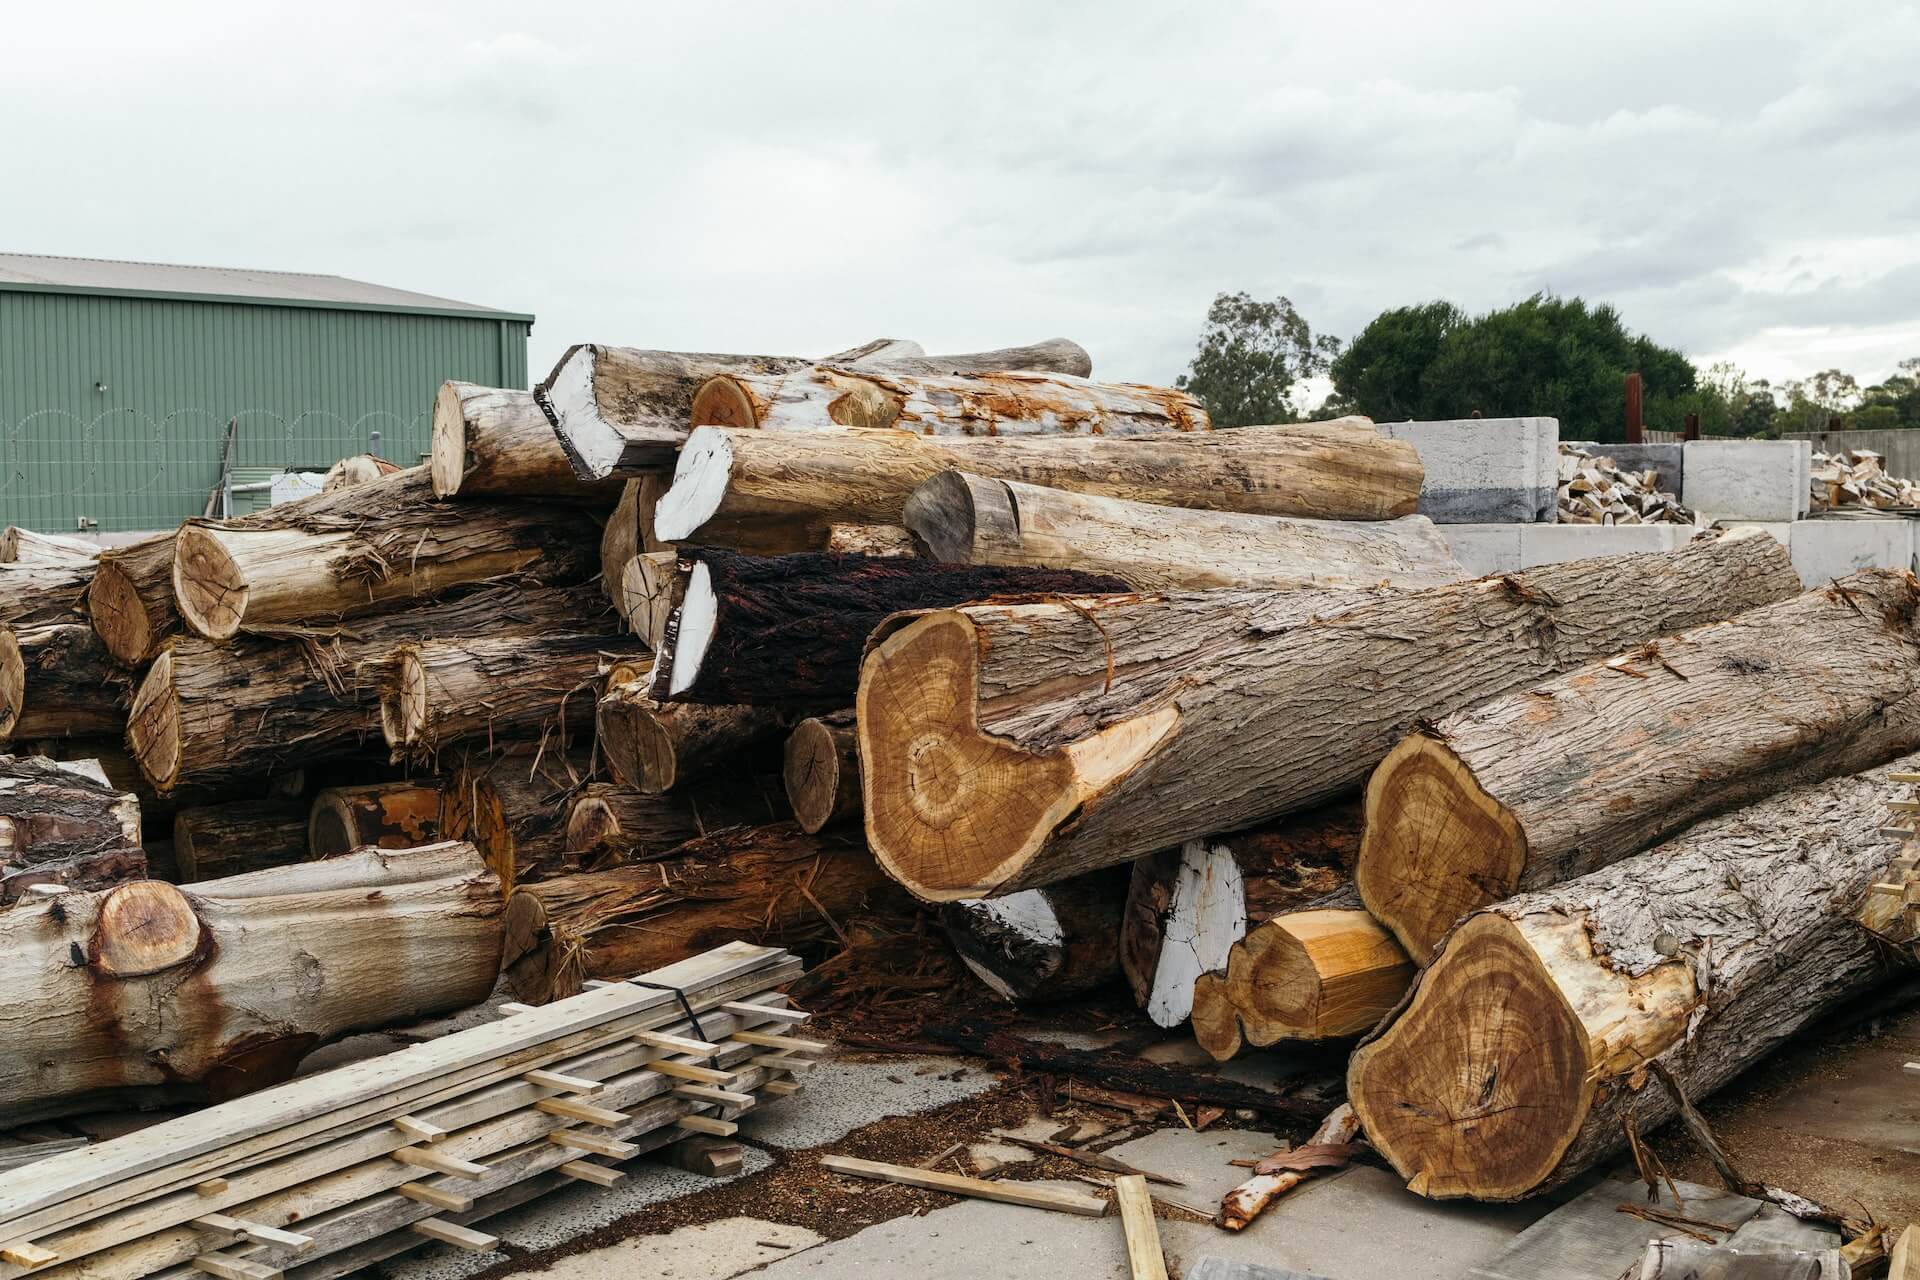 Vervolging en opsporing illegale houtkap door het OM